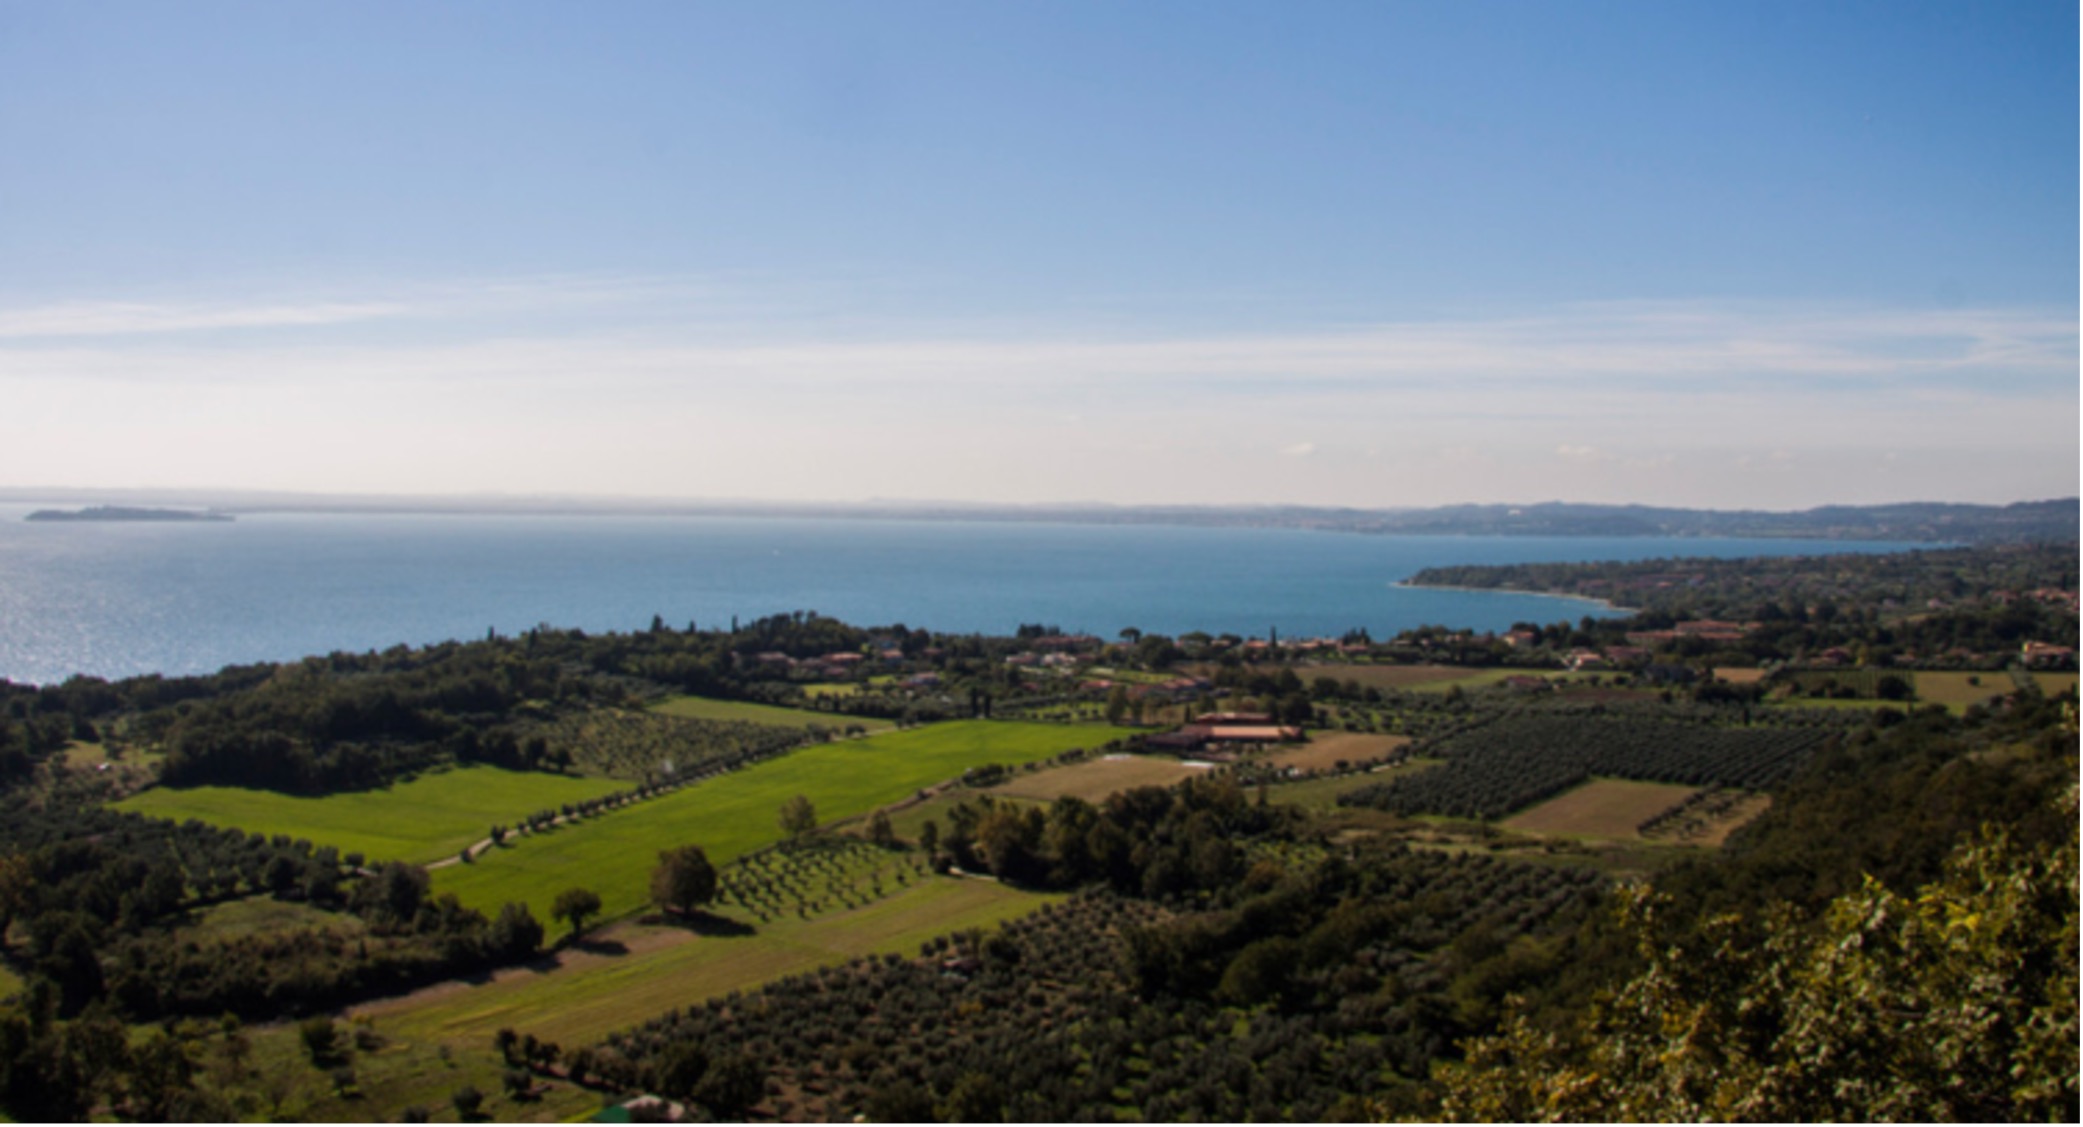 Valtenesi vineyards on Lago di Garda - Lombardia